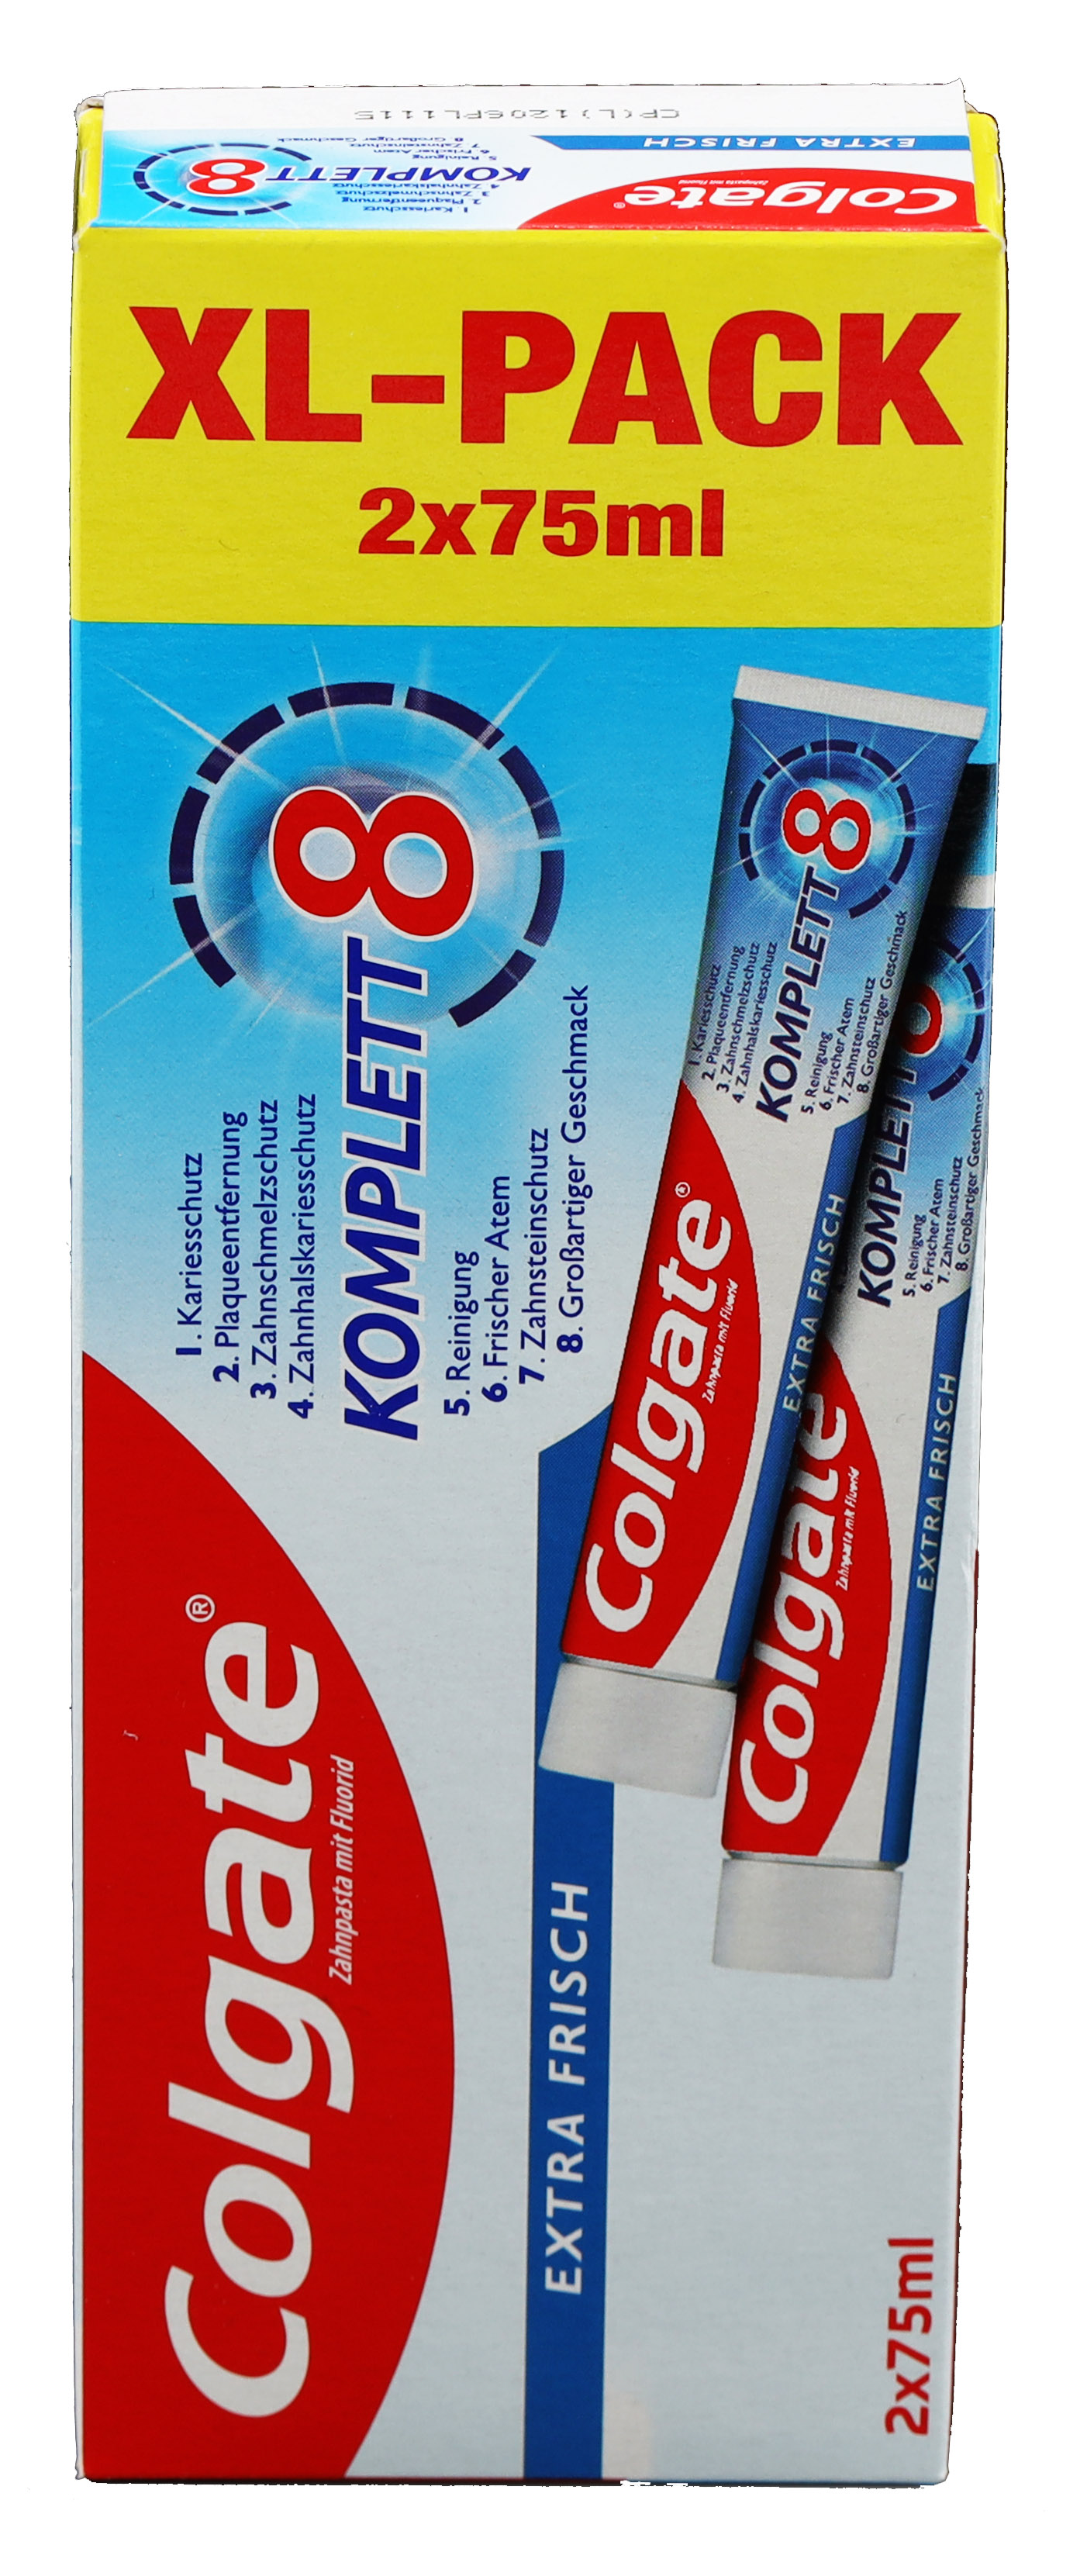 Colgate Komplett 8 Extra Frisch Zahnpasta XL Pack 2x75ml